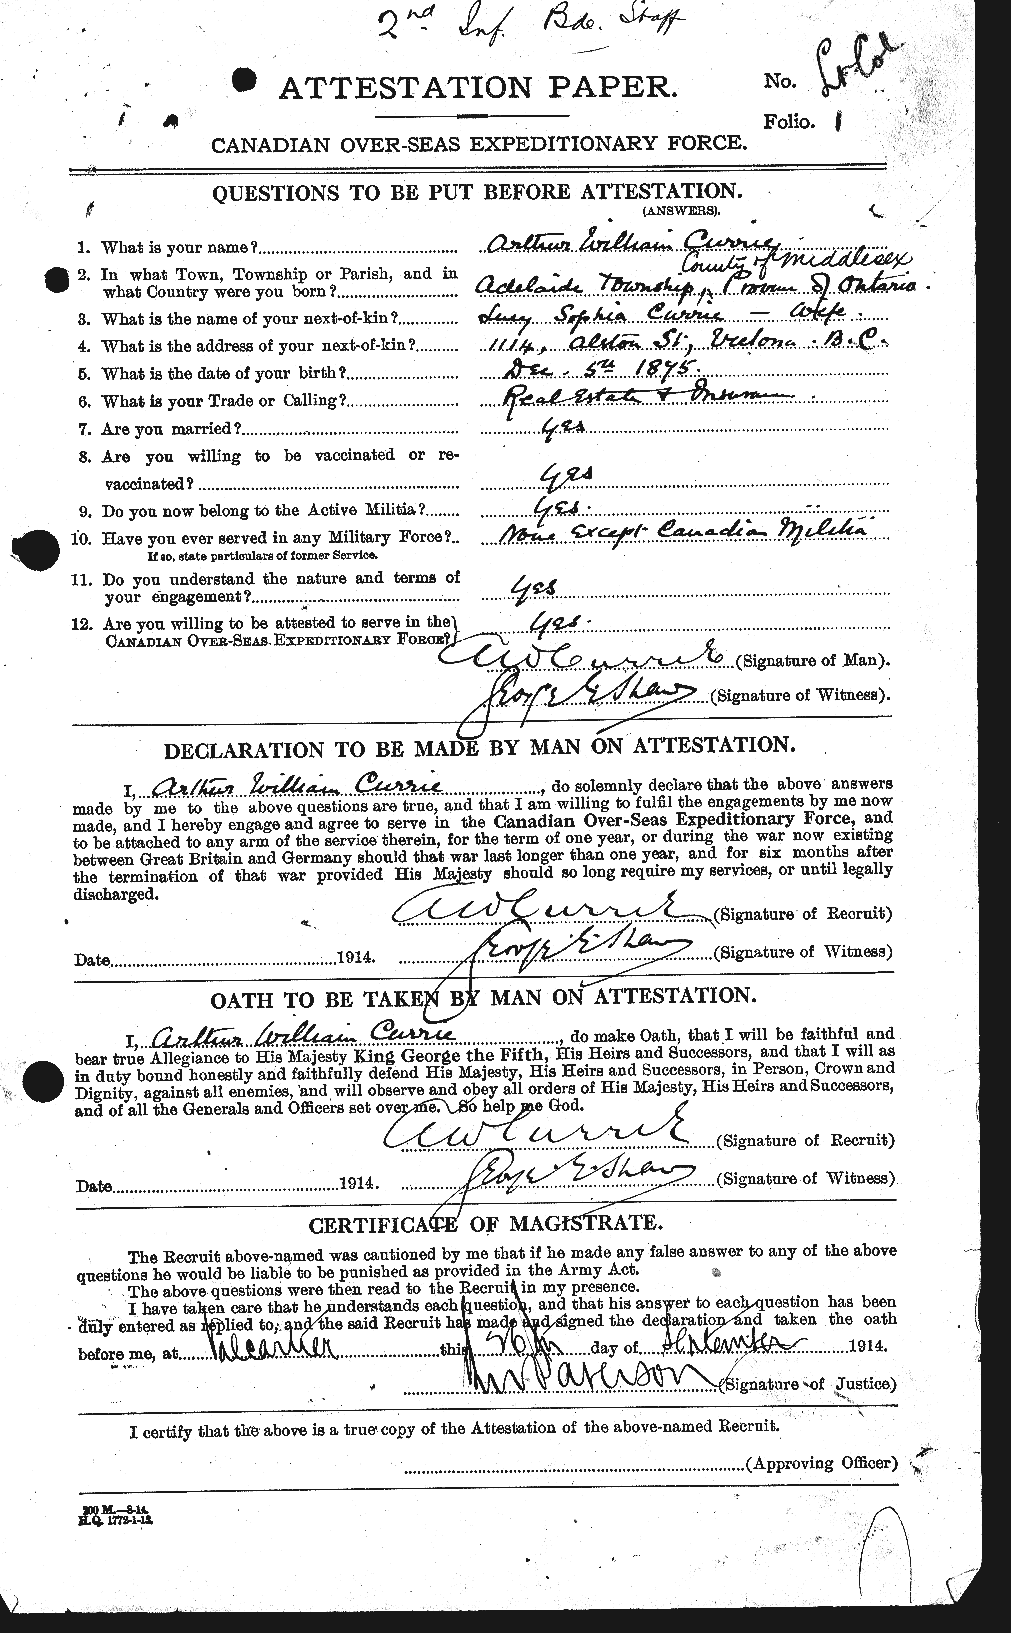 Dossiers du Personnel de la Première Guerre mondiale - CEC 073228a